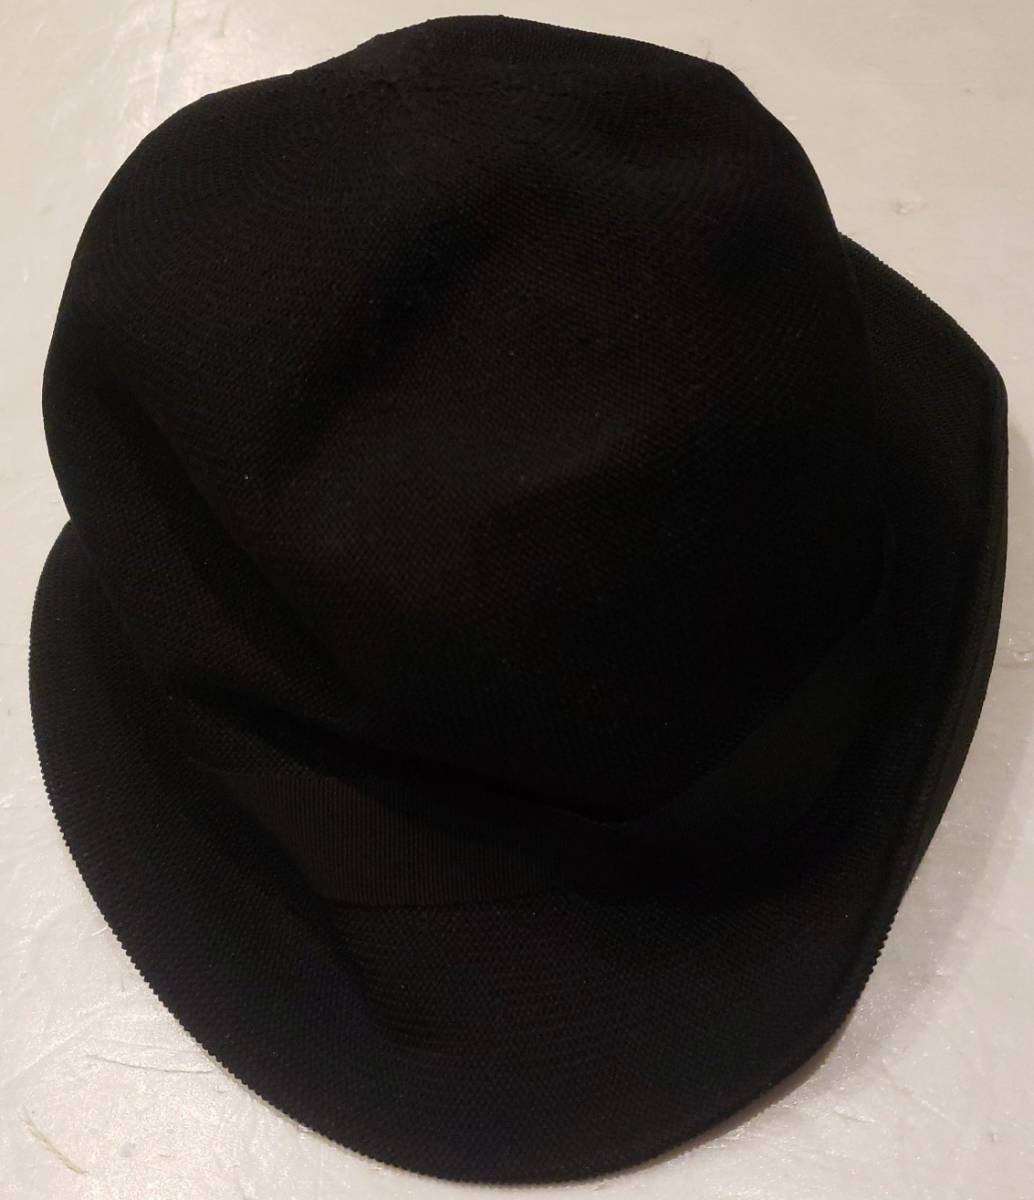  Kangol KANGOL England made Vintage yellowtail m hat black 